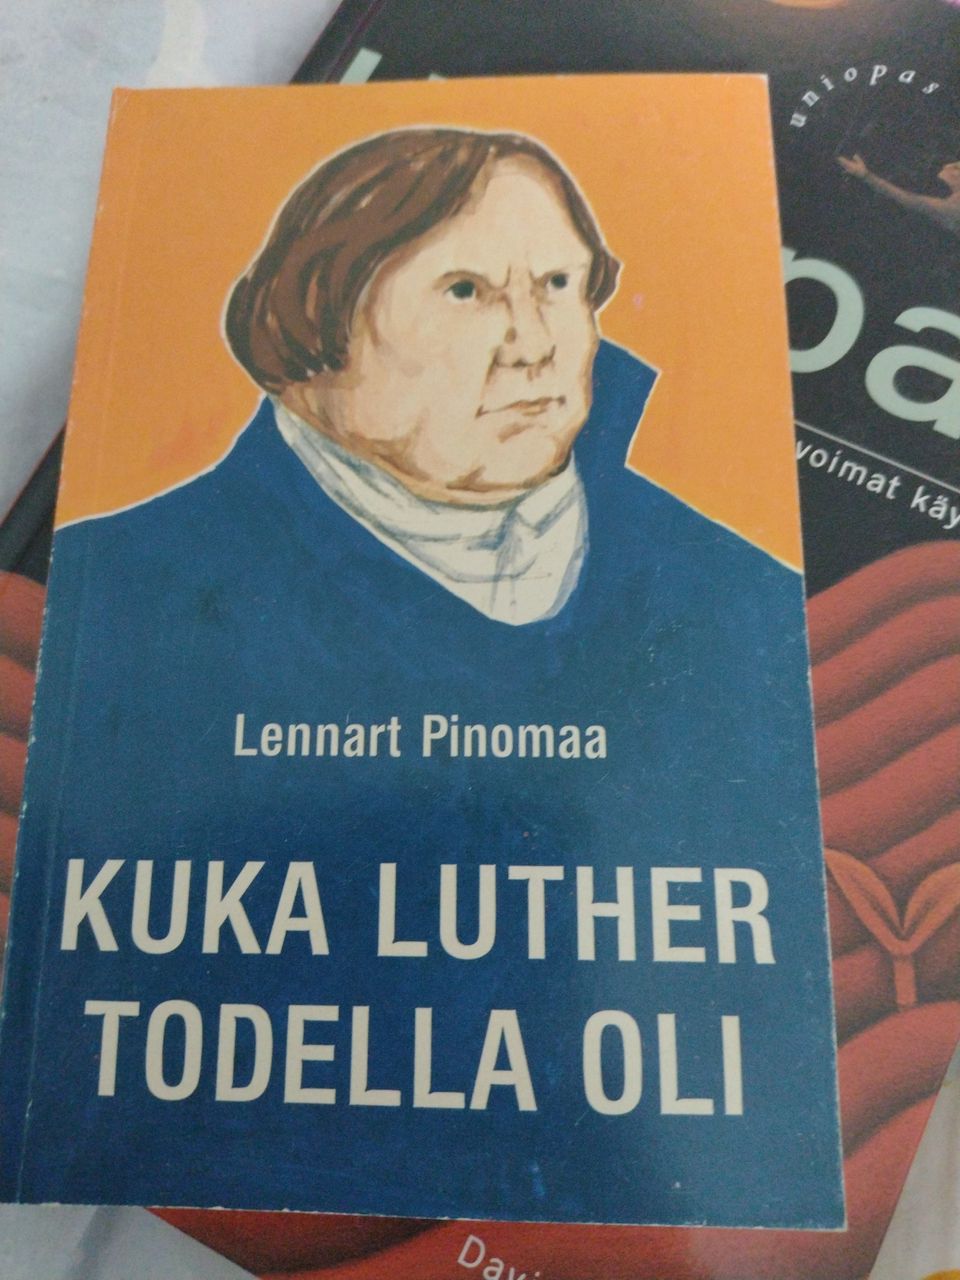 Lennart Pinomaa: Kuka Luther oikein oli?